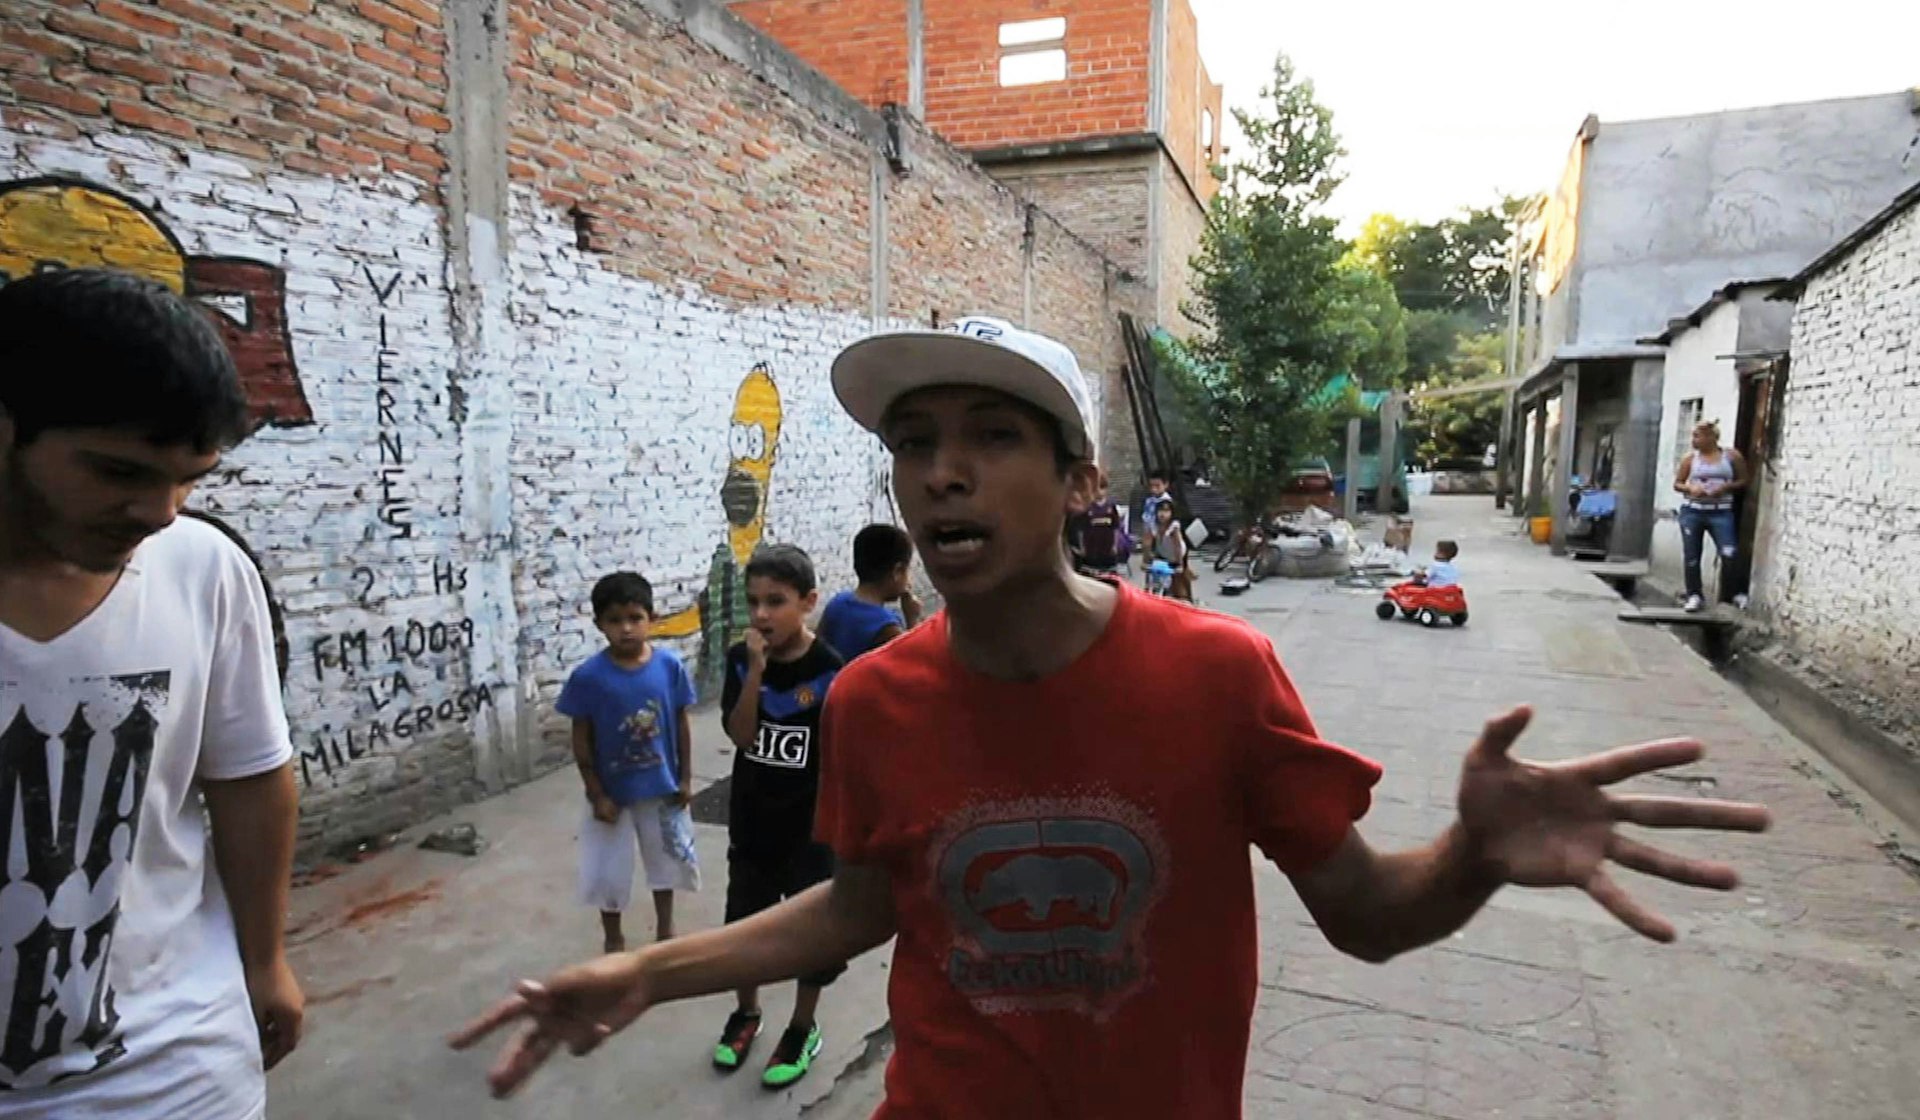 Buenos Aires Rap